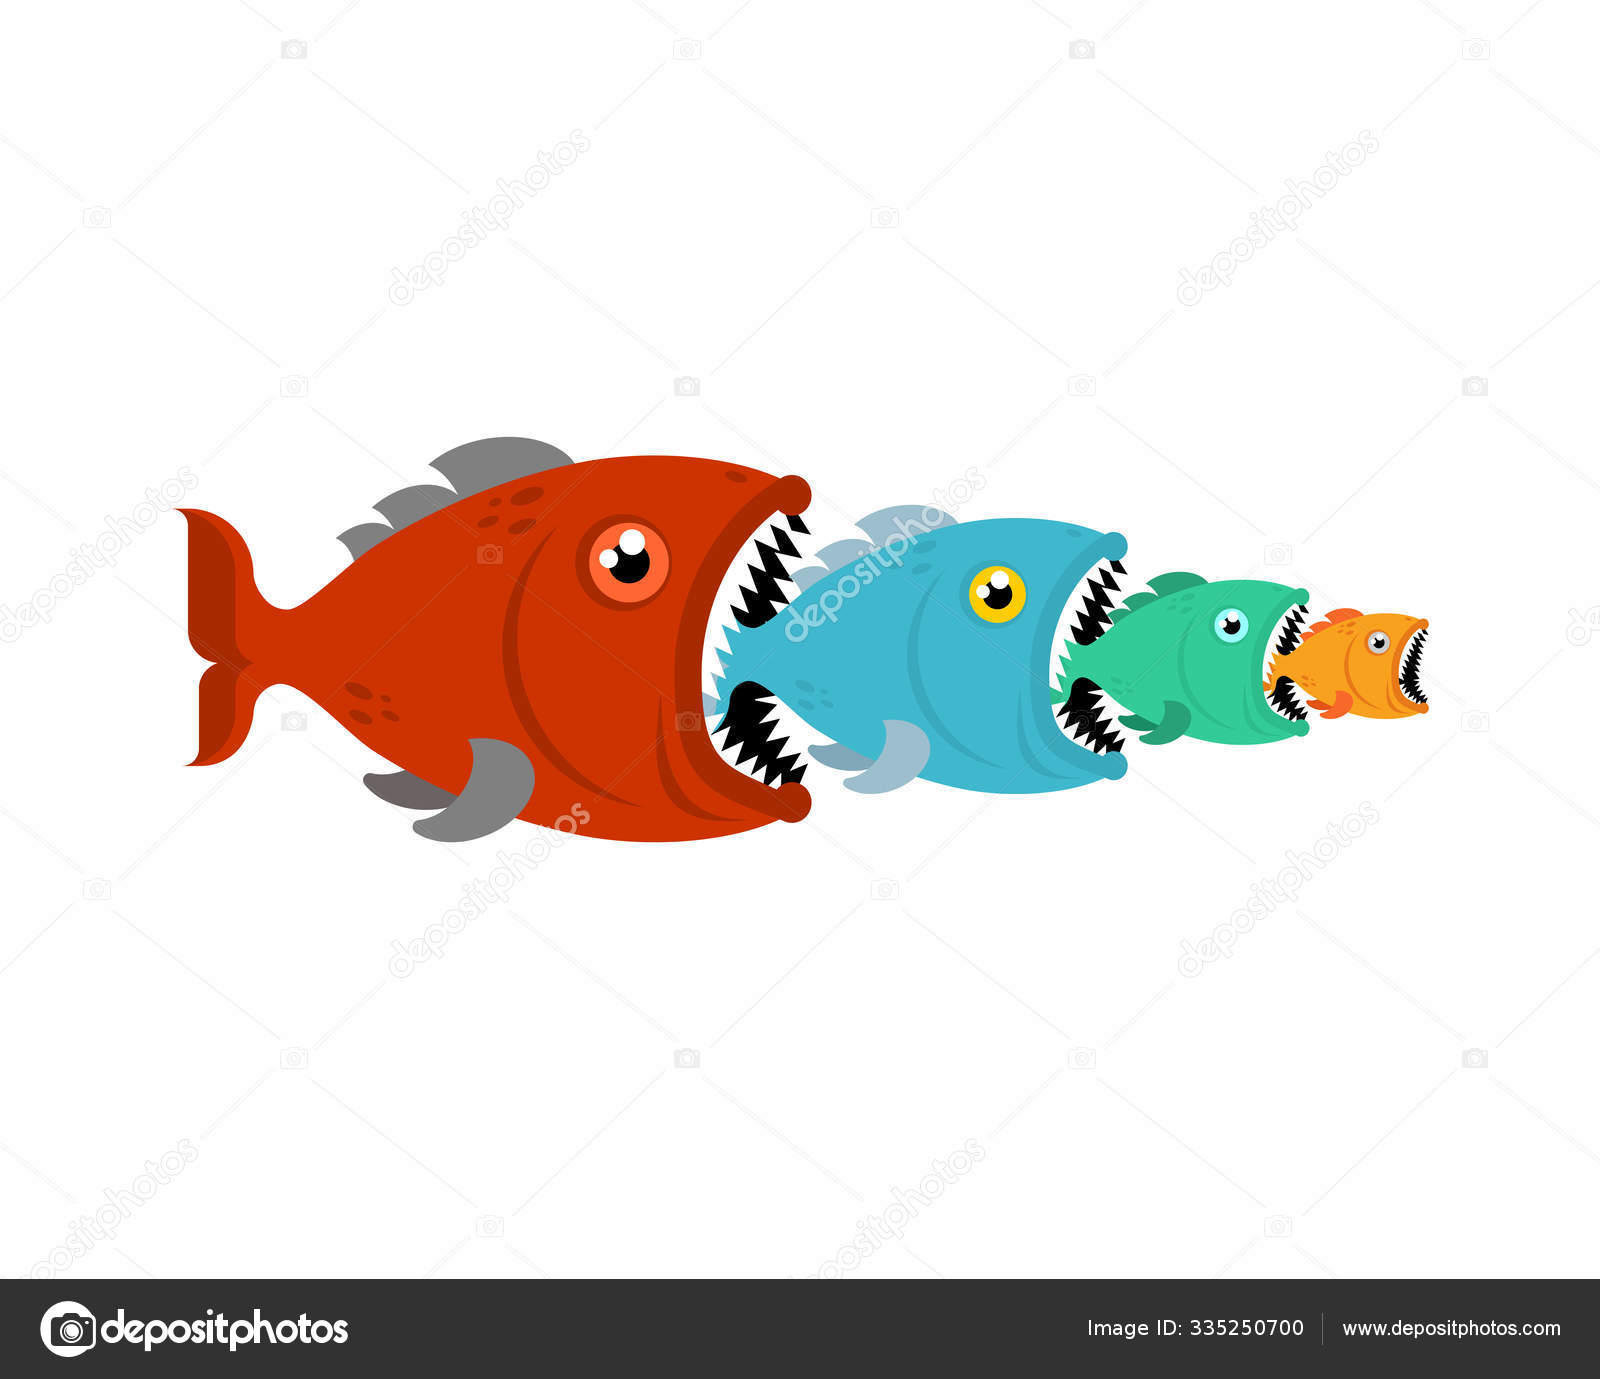 depositphotos_335250700-stock-illustration-big-fish-eats-small-fish.jpg